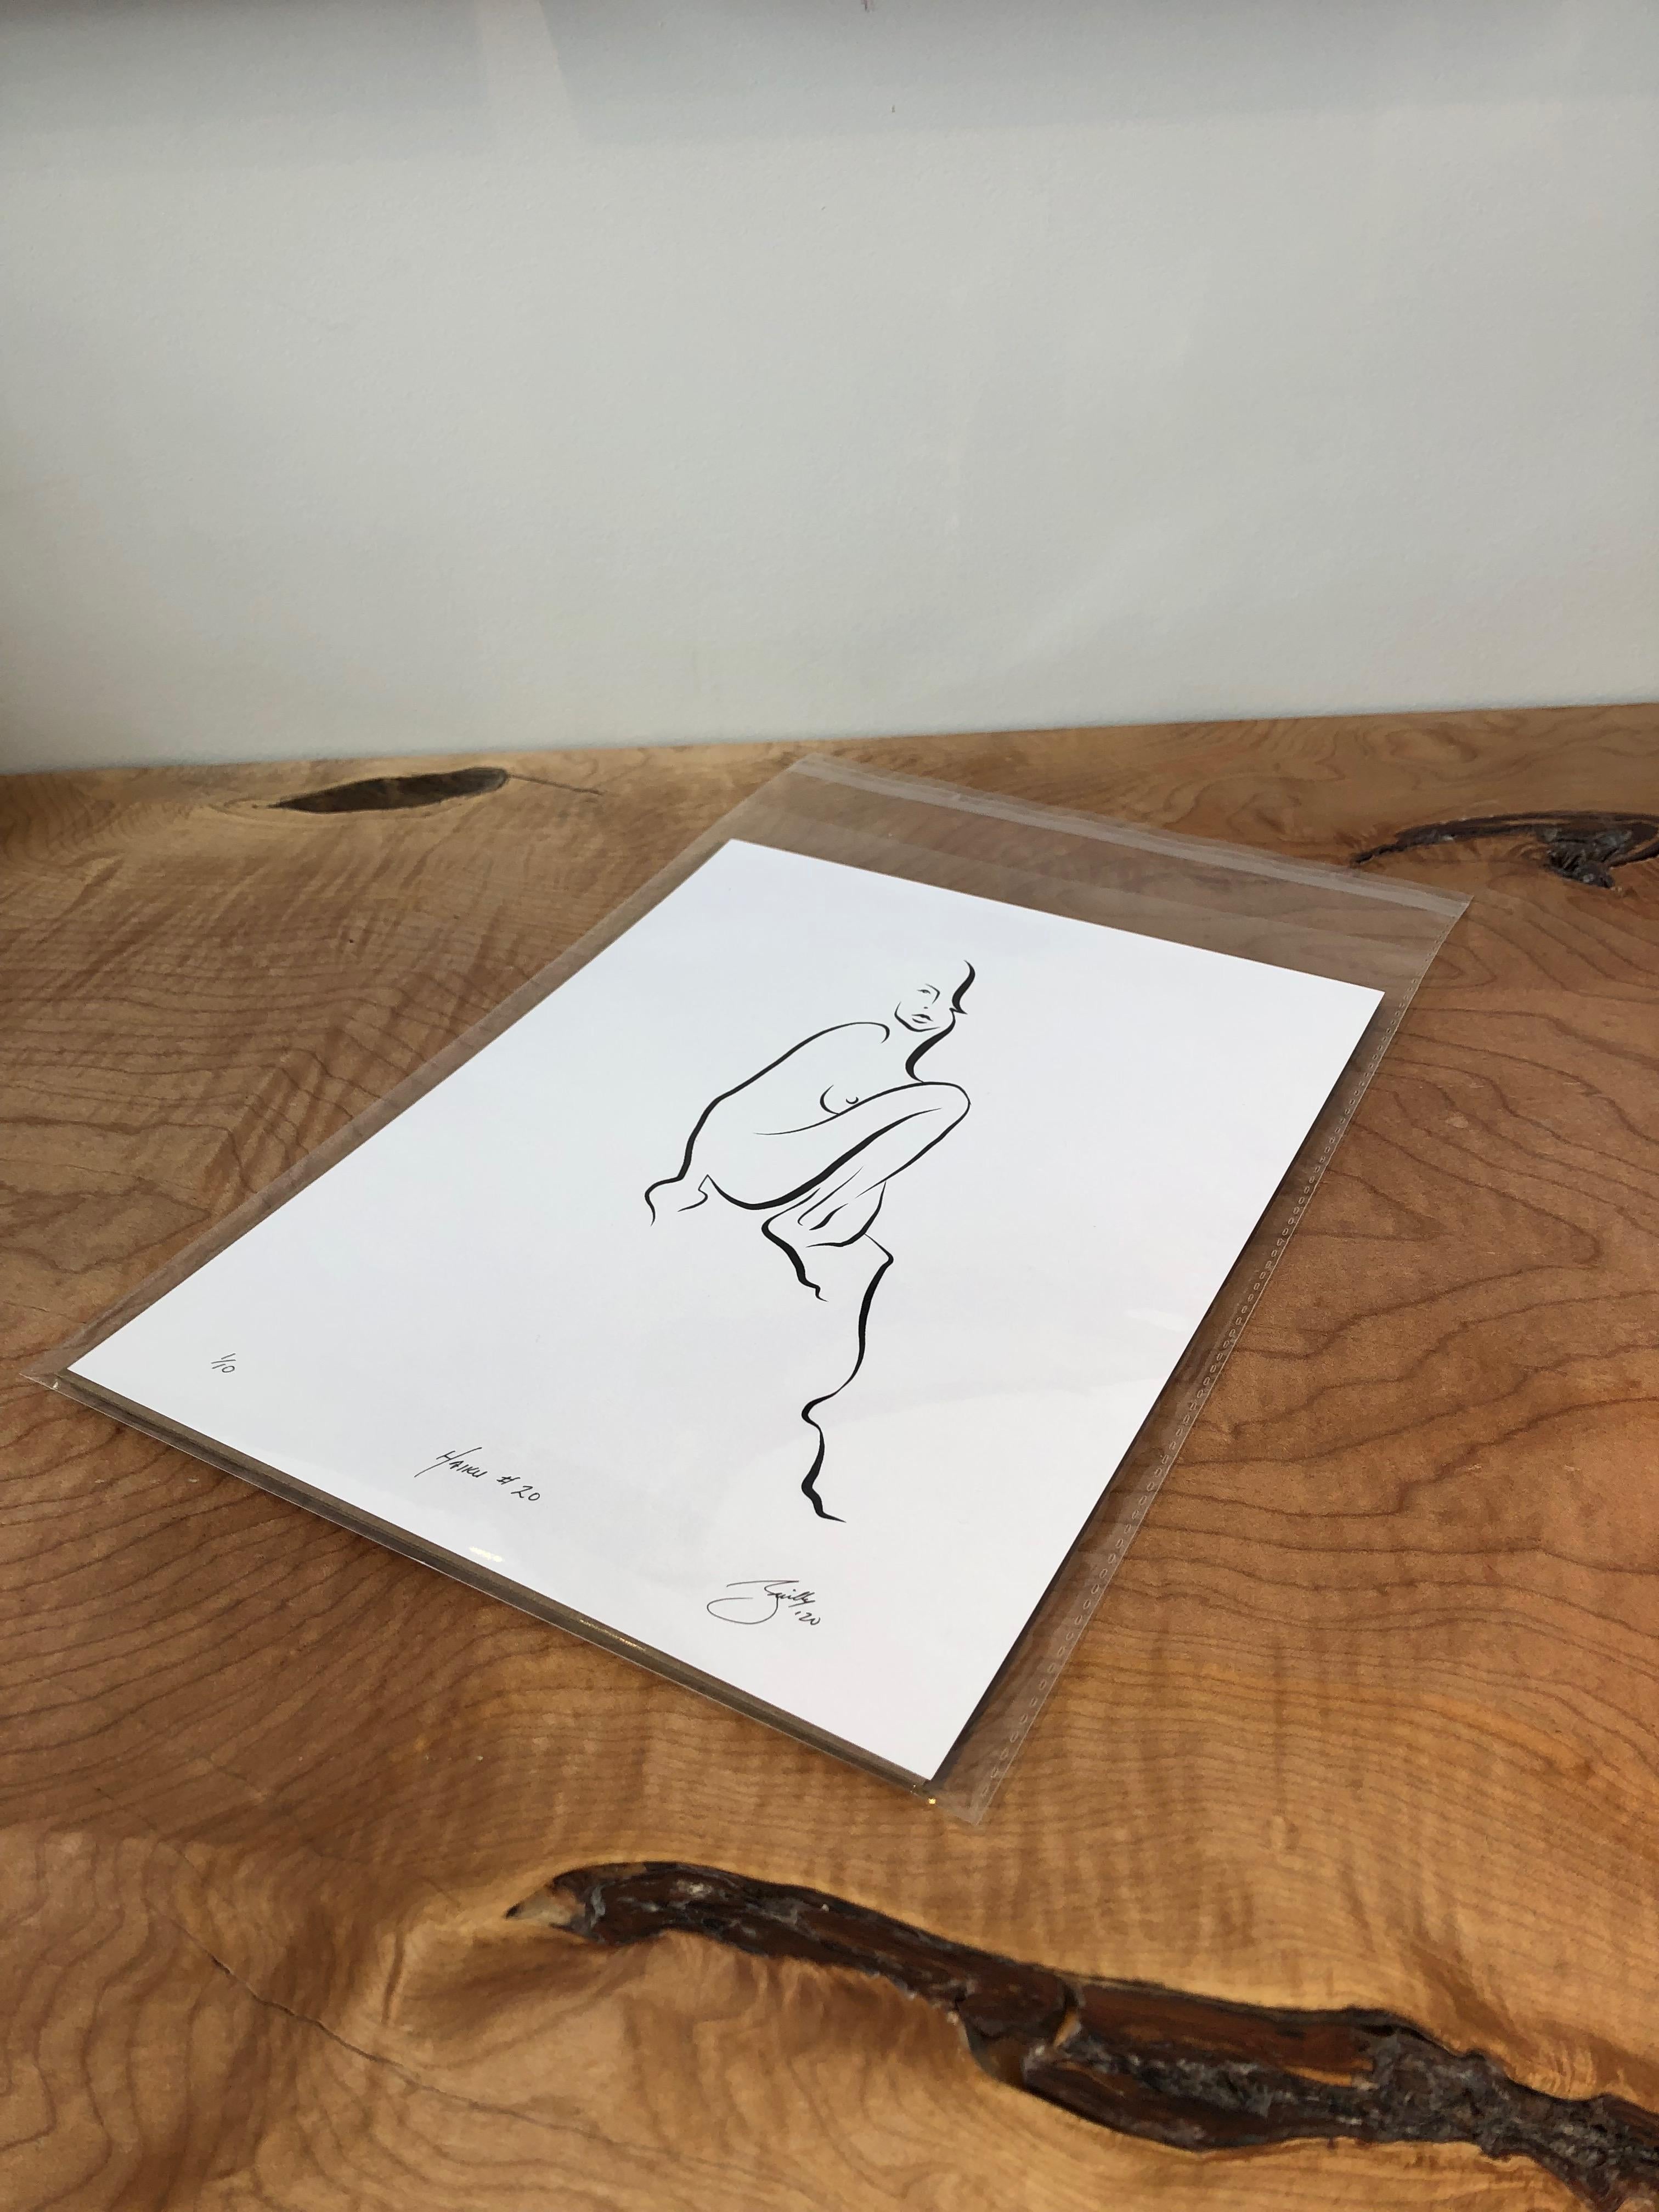 Haiku #20, 1/50 - Digital Vector Drawing Sitting Female Nude Woman Figure Knee  - Contemporary Art by Michael Binkley